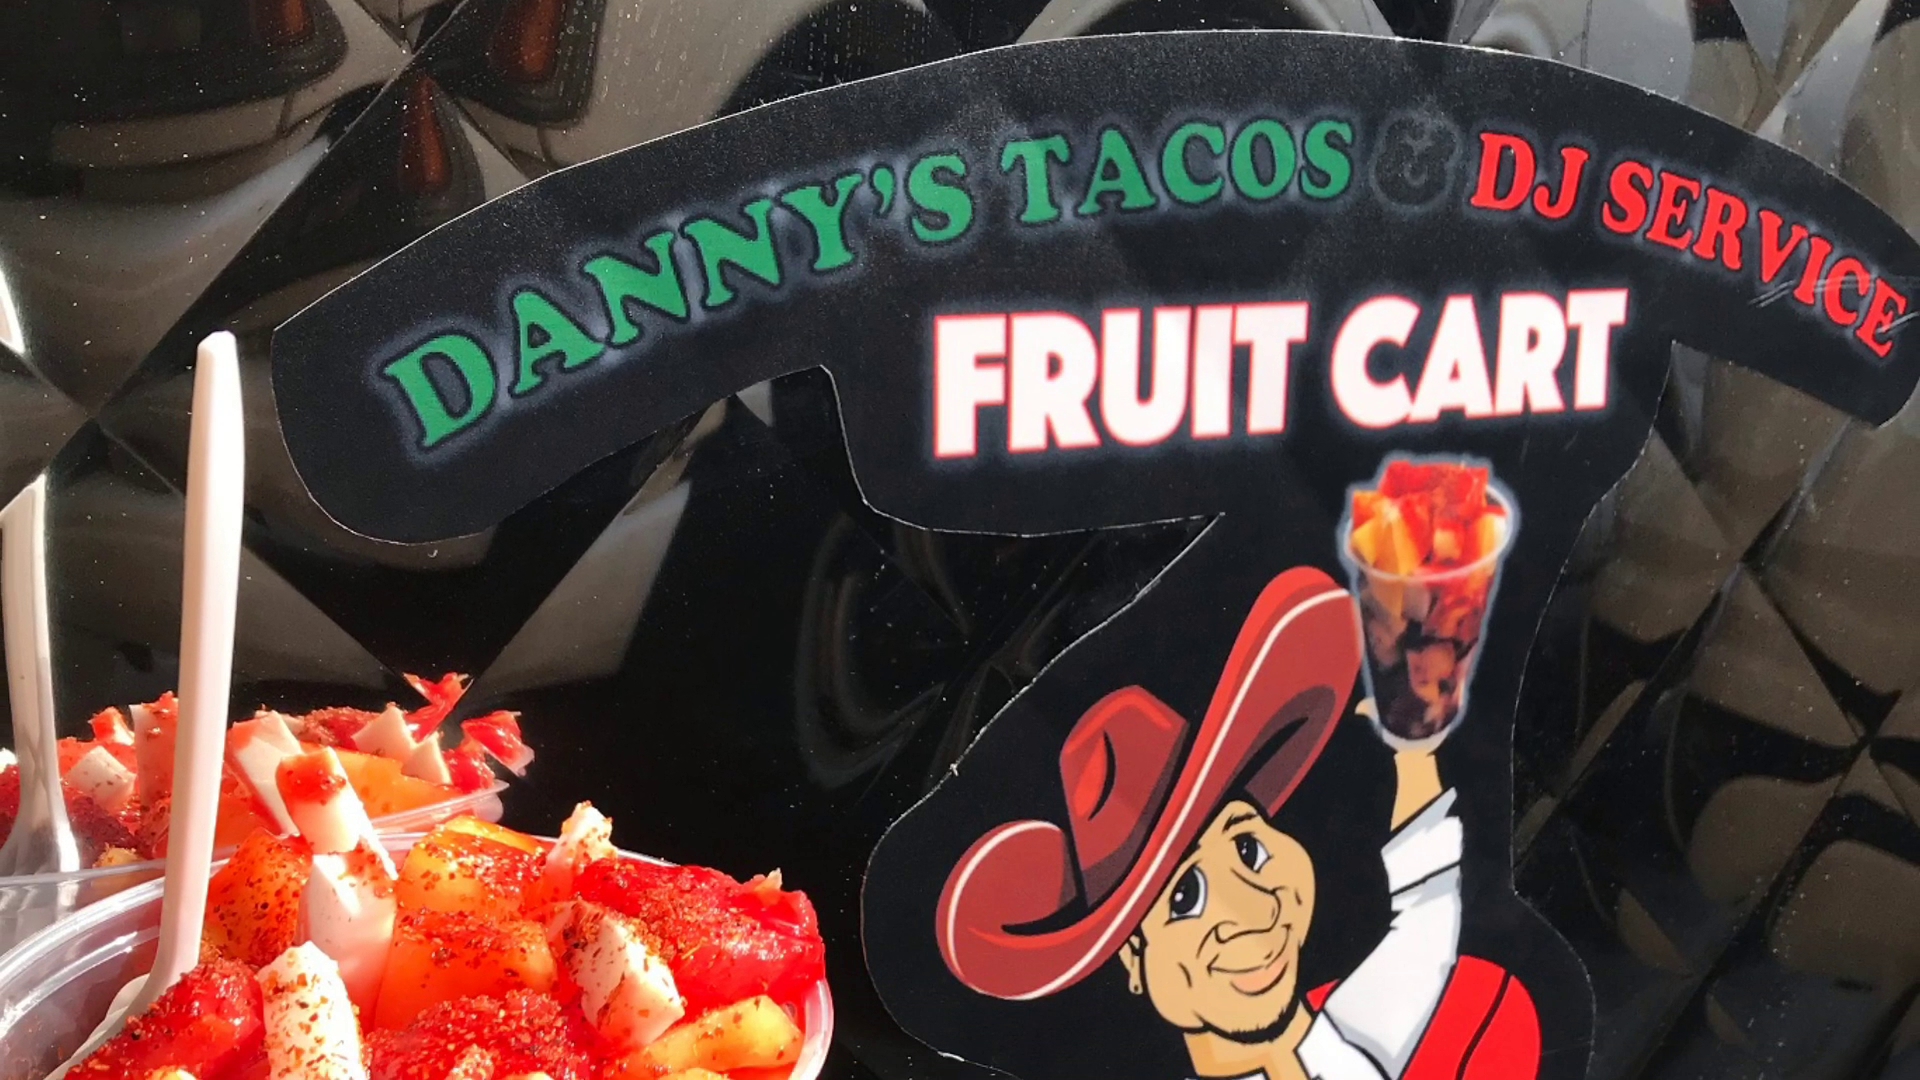 Dannys Tacos and Dj Service